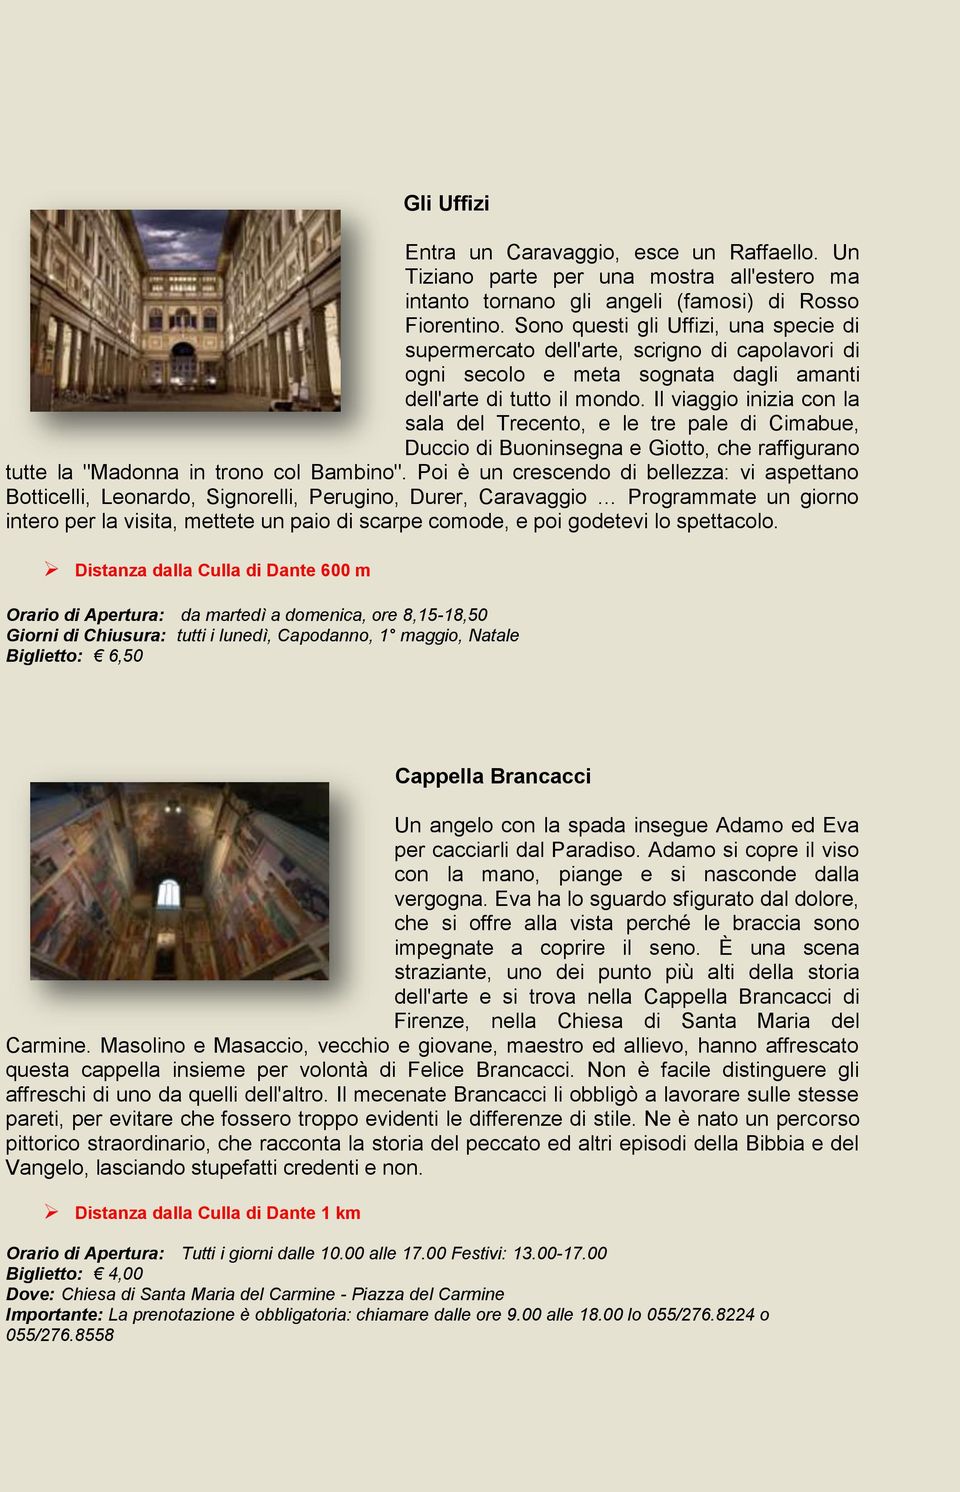 Il viaggio inizia con la sala del Trecento, e le tre pale di Cimabue, Duccio di Buoninsegna e Giotto, che raffigurano tutte la "Madonna in trono col Bambino".